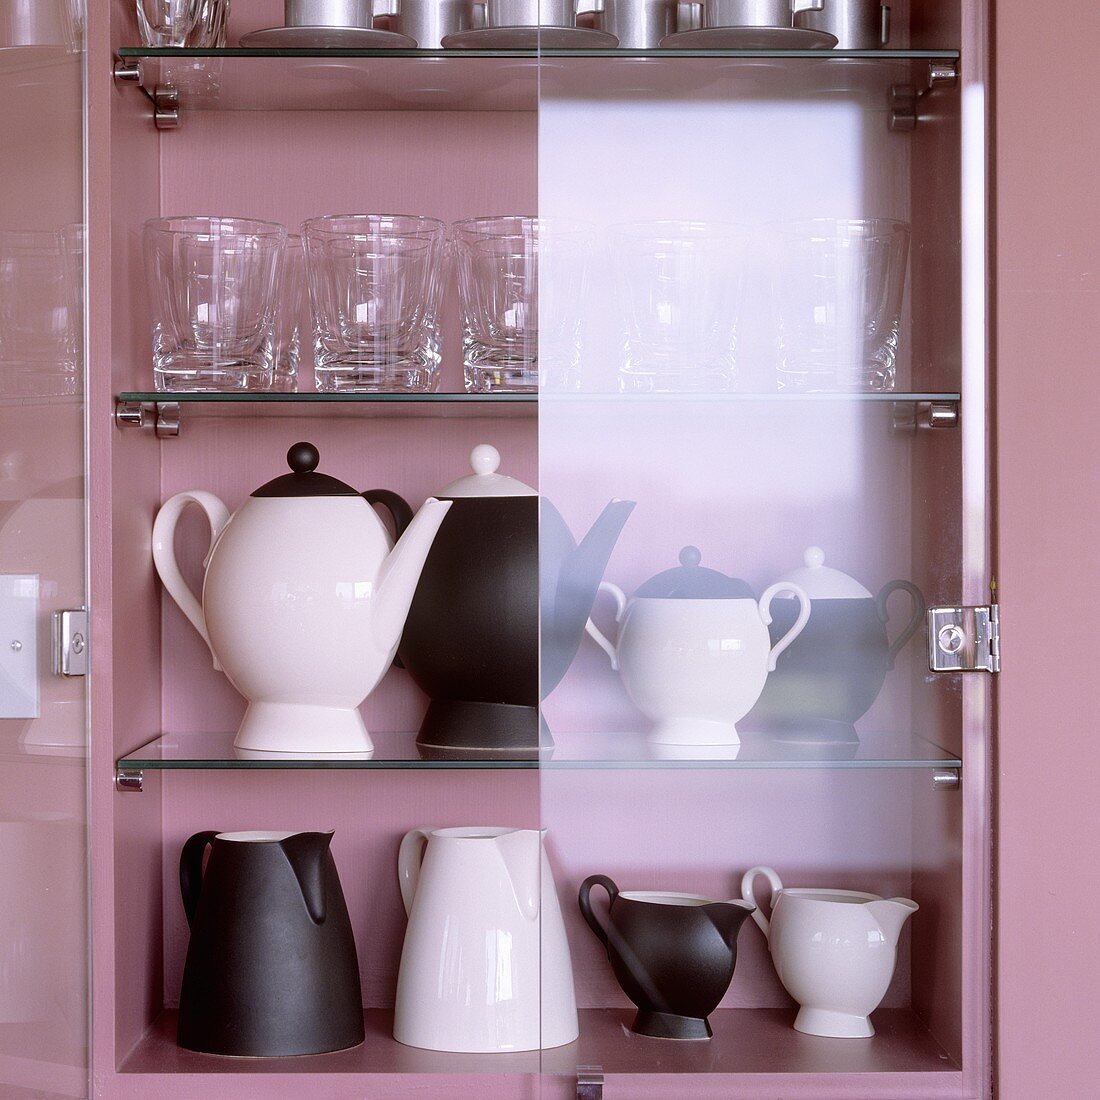 Schwarzweisse Kannen und Gläser im rosalackierten Schrank mit offener Glastür